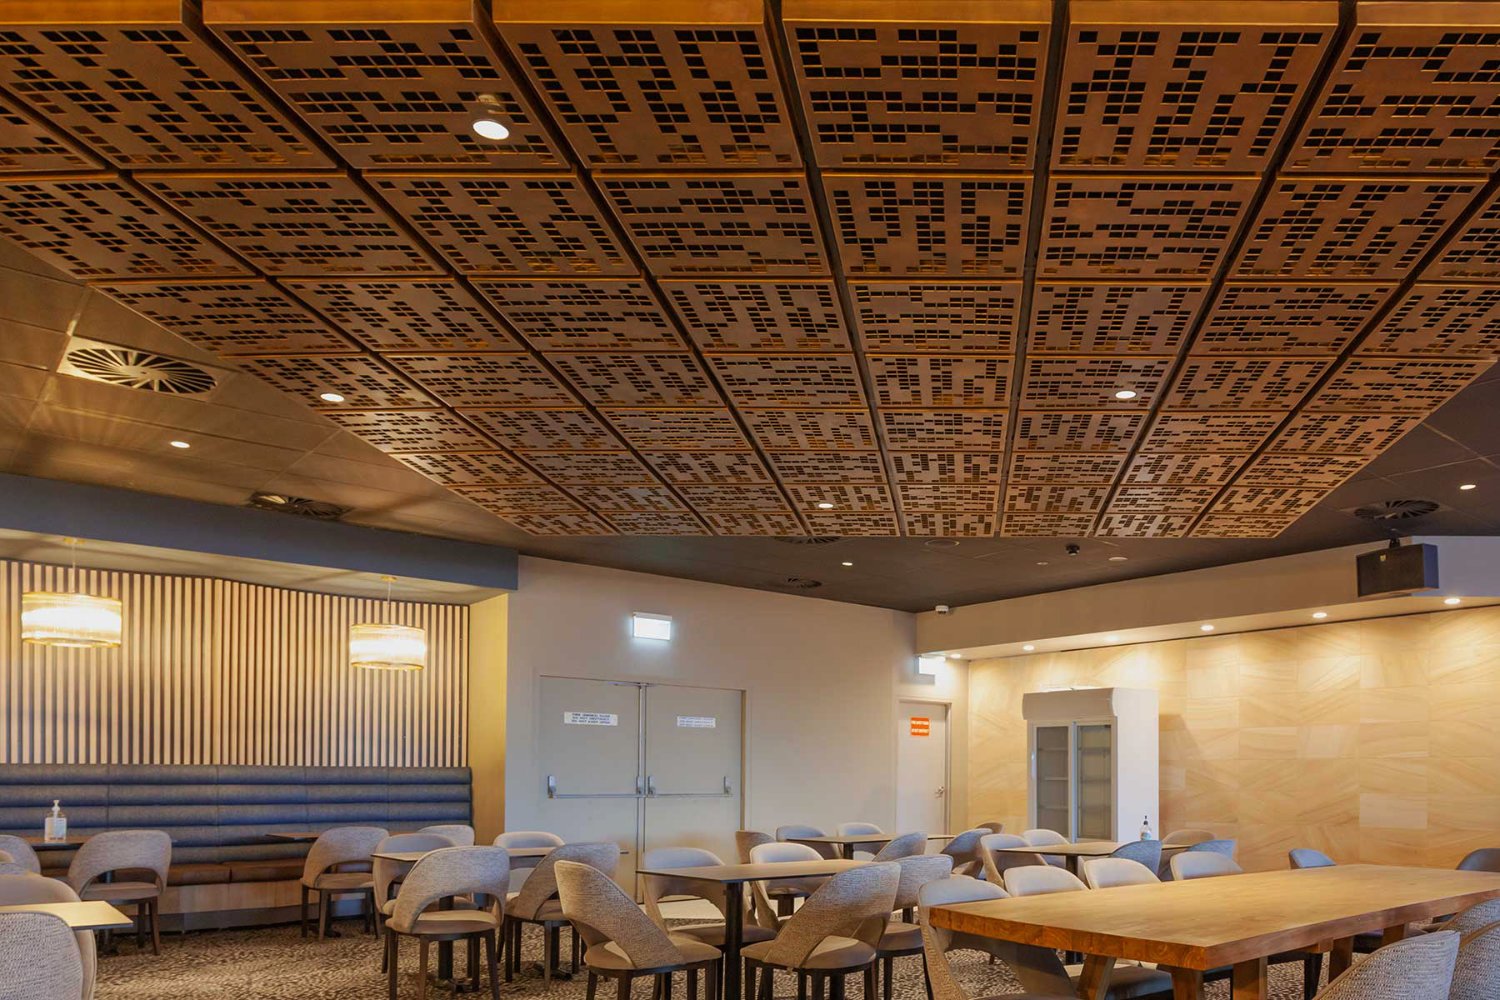 maroubra-seals-laser-cut-ceiling.jpg